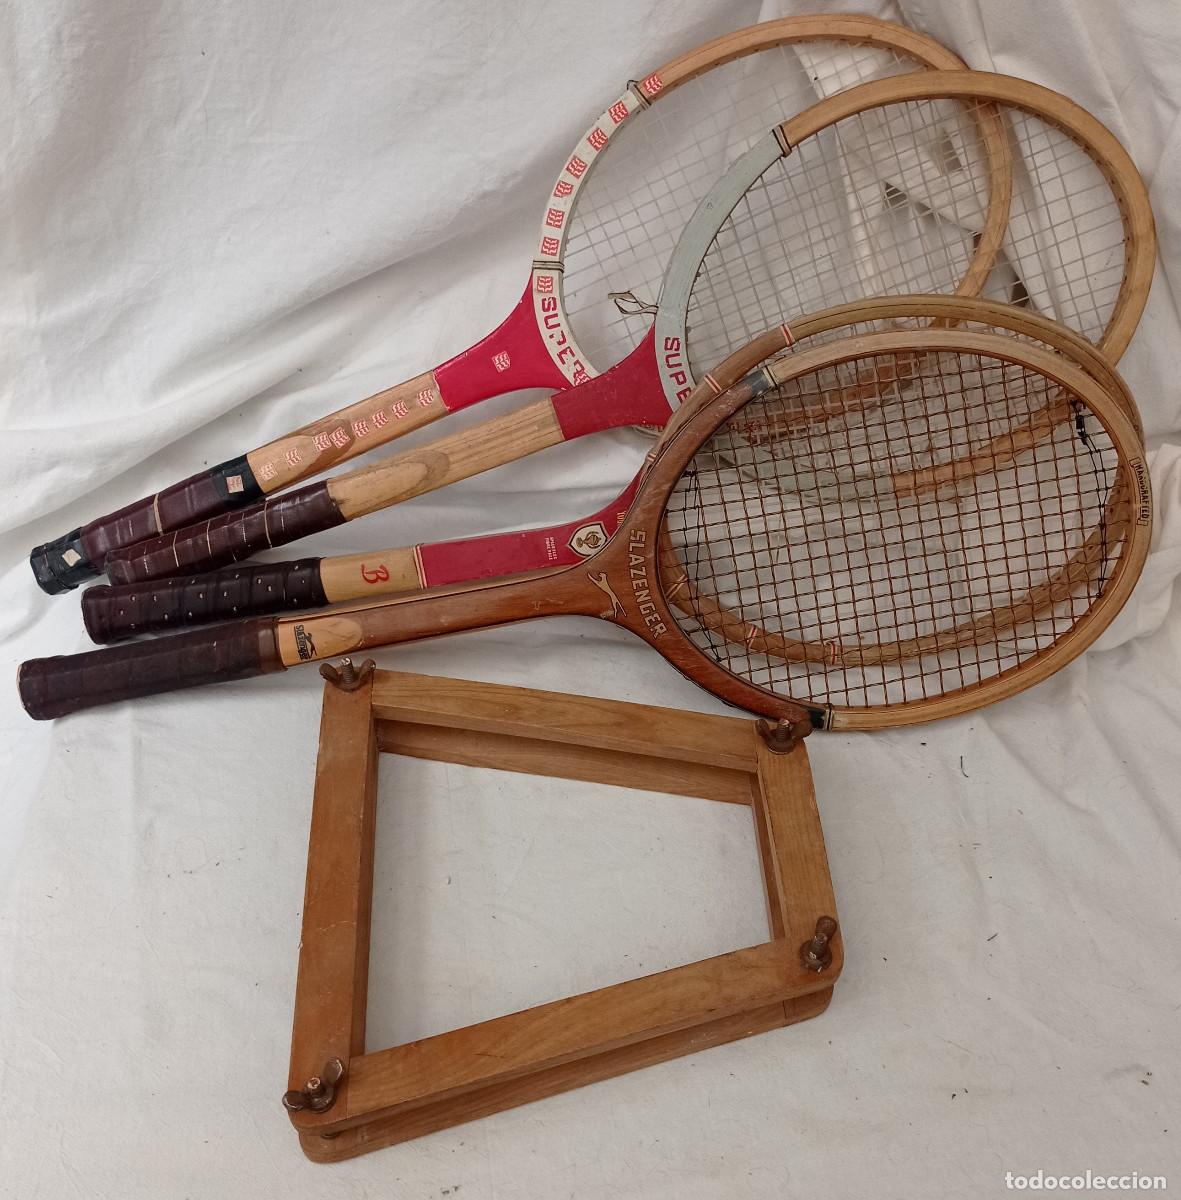 raquetas de tenis, lote de 4 + tensor de madera